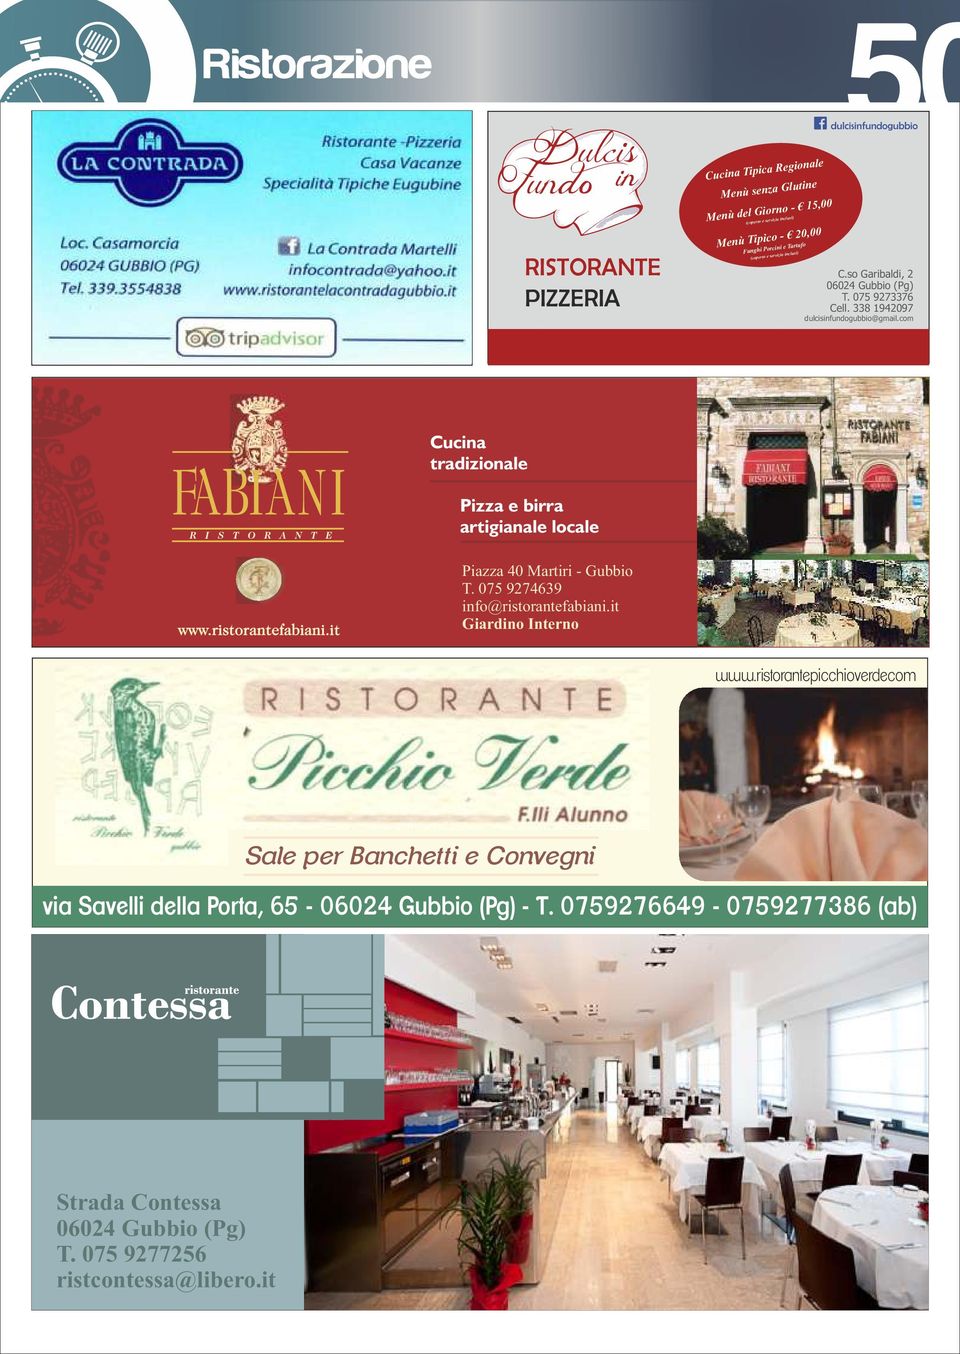 com Cucina tradizionale Pizza e birra artigianale locale Piazza 40 Martiri - Gubbio T. 075 9274639 info@ristorantefabiani.it Giardino Interno www.